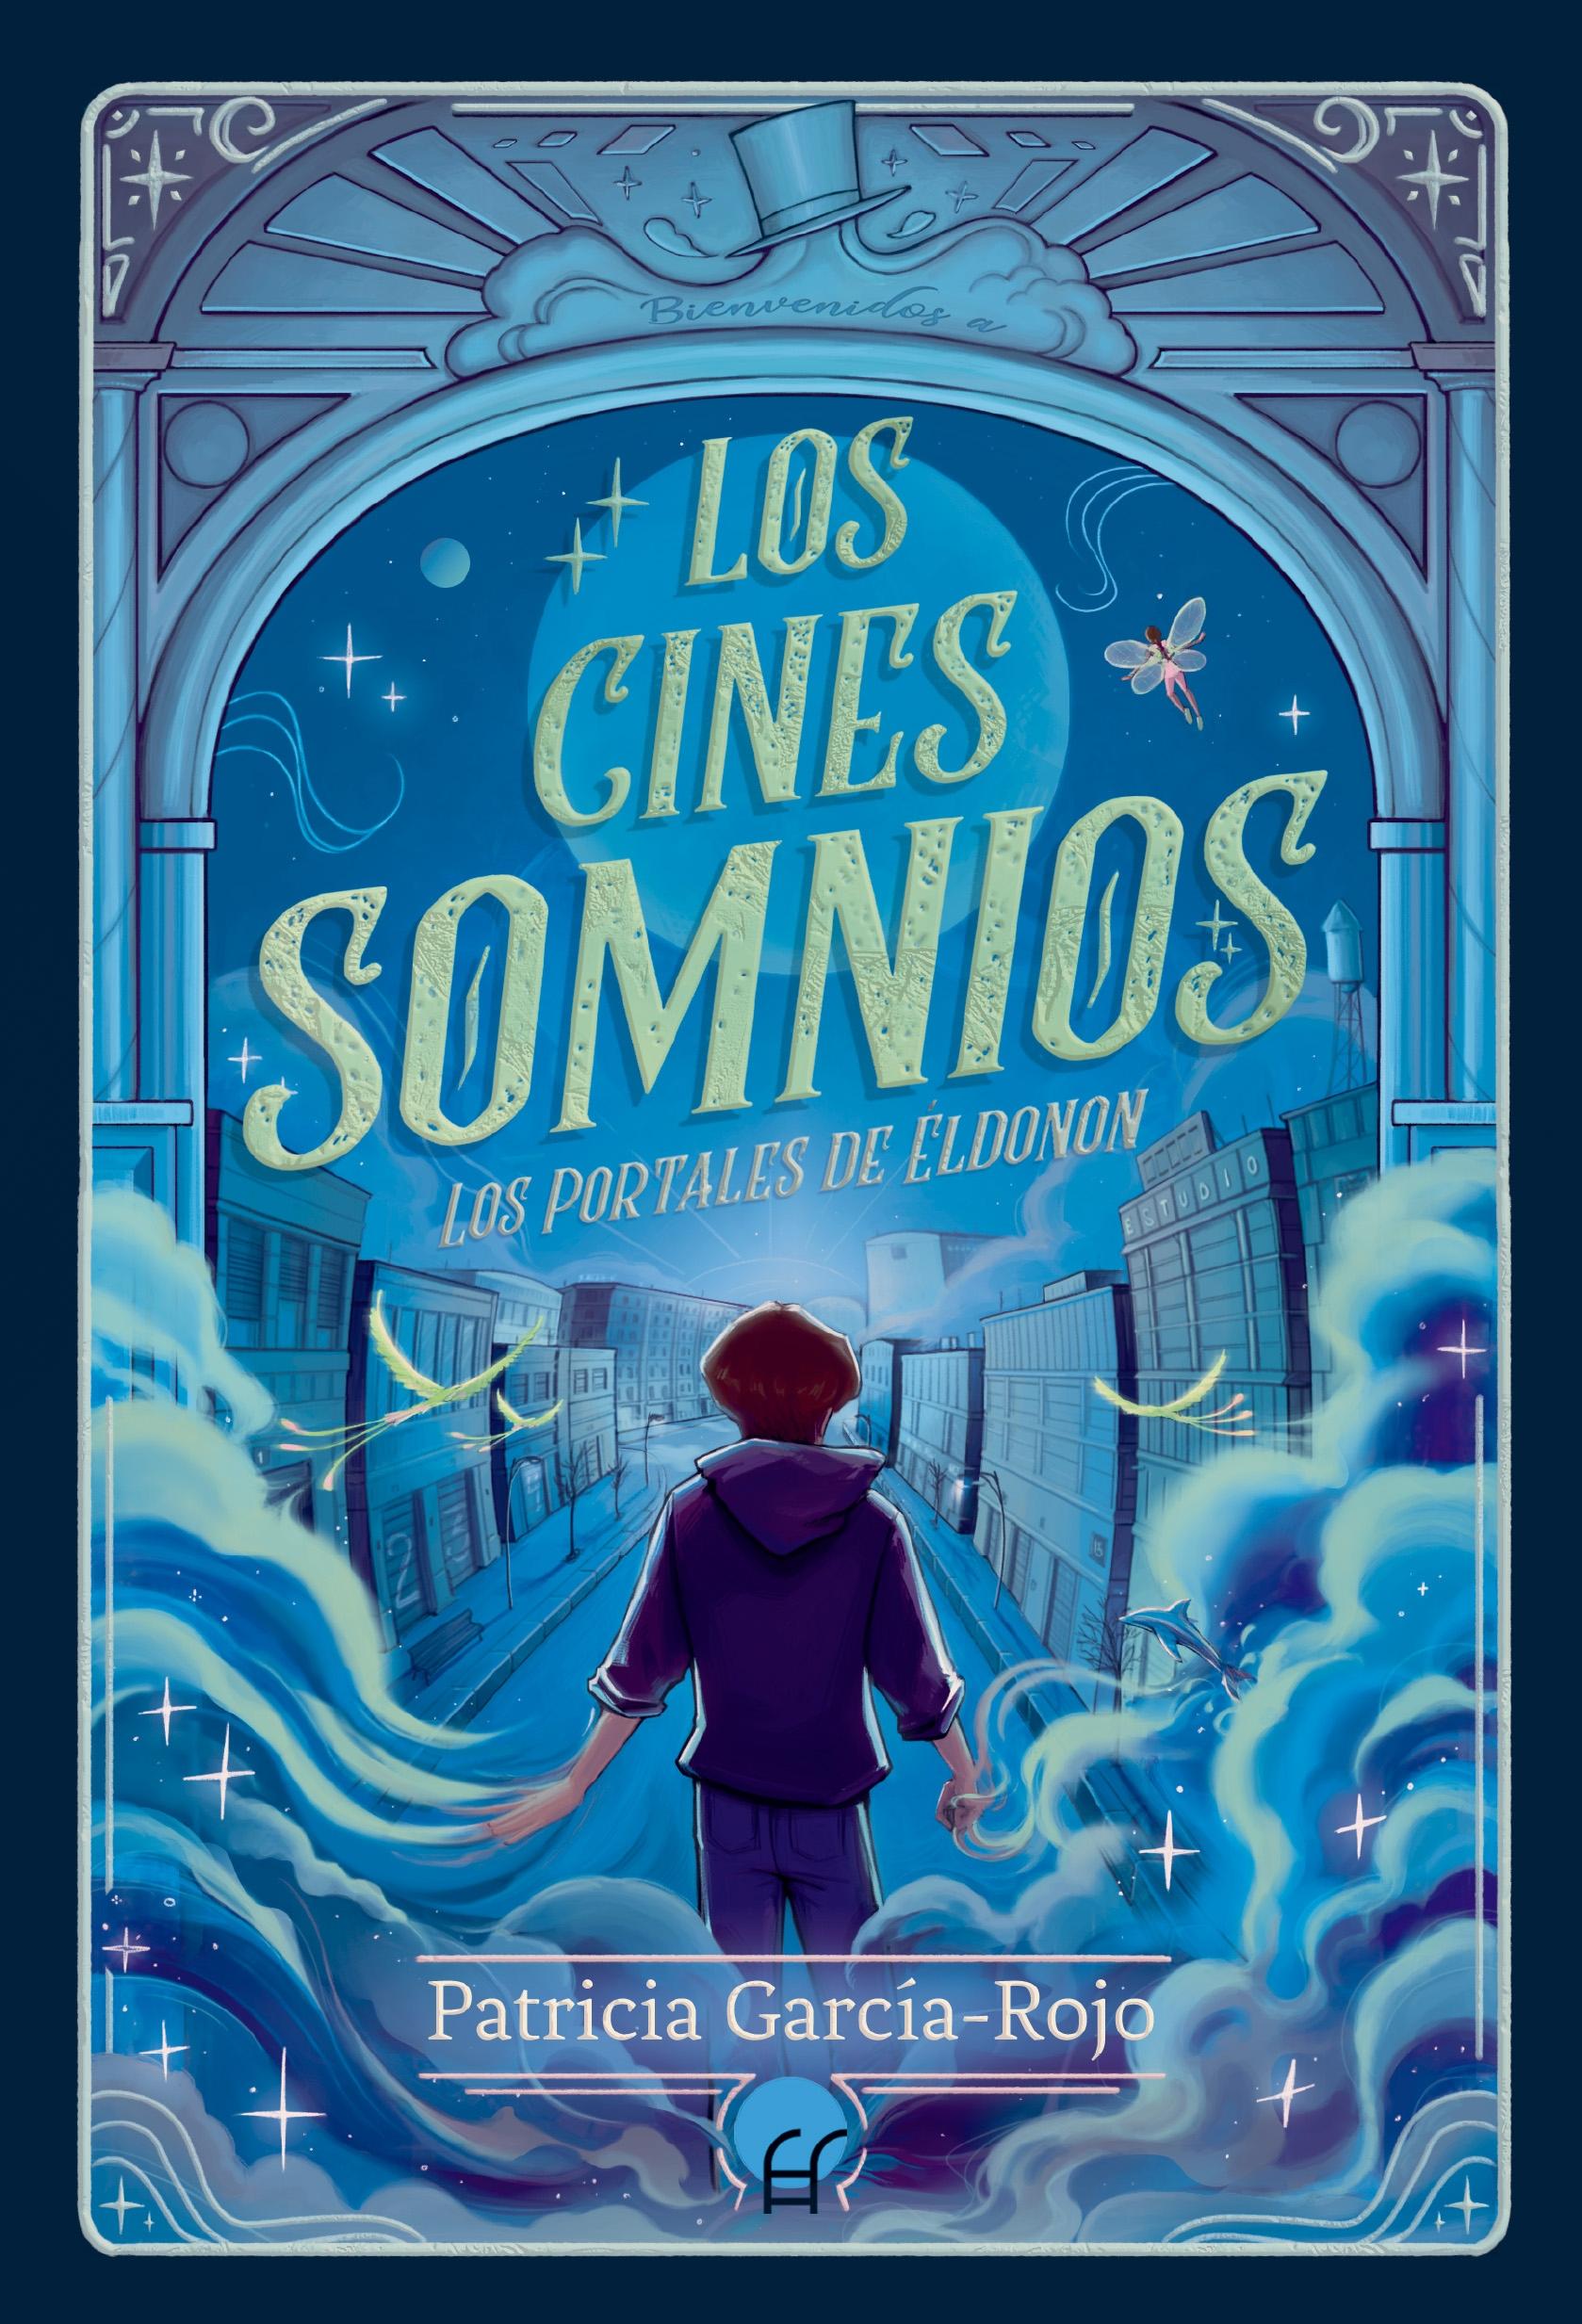 Los Cines Somnios "Los Portales de Éldonon 2". 